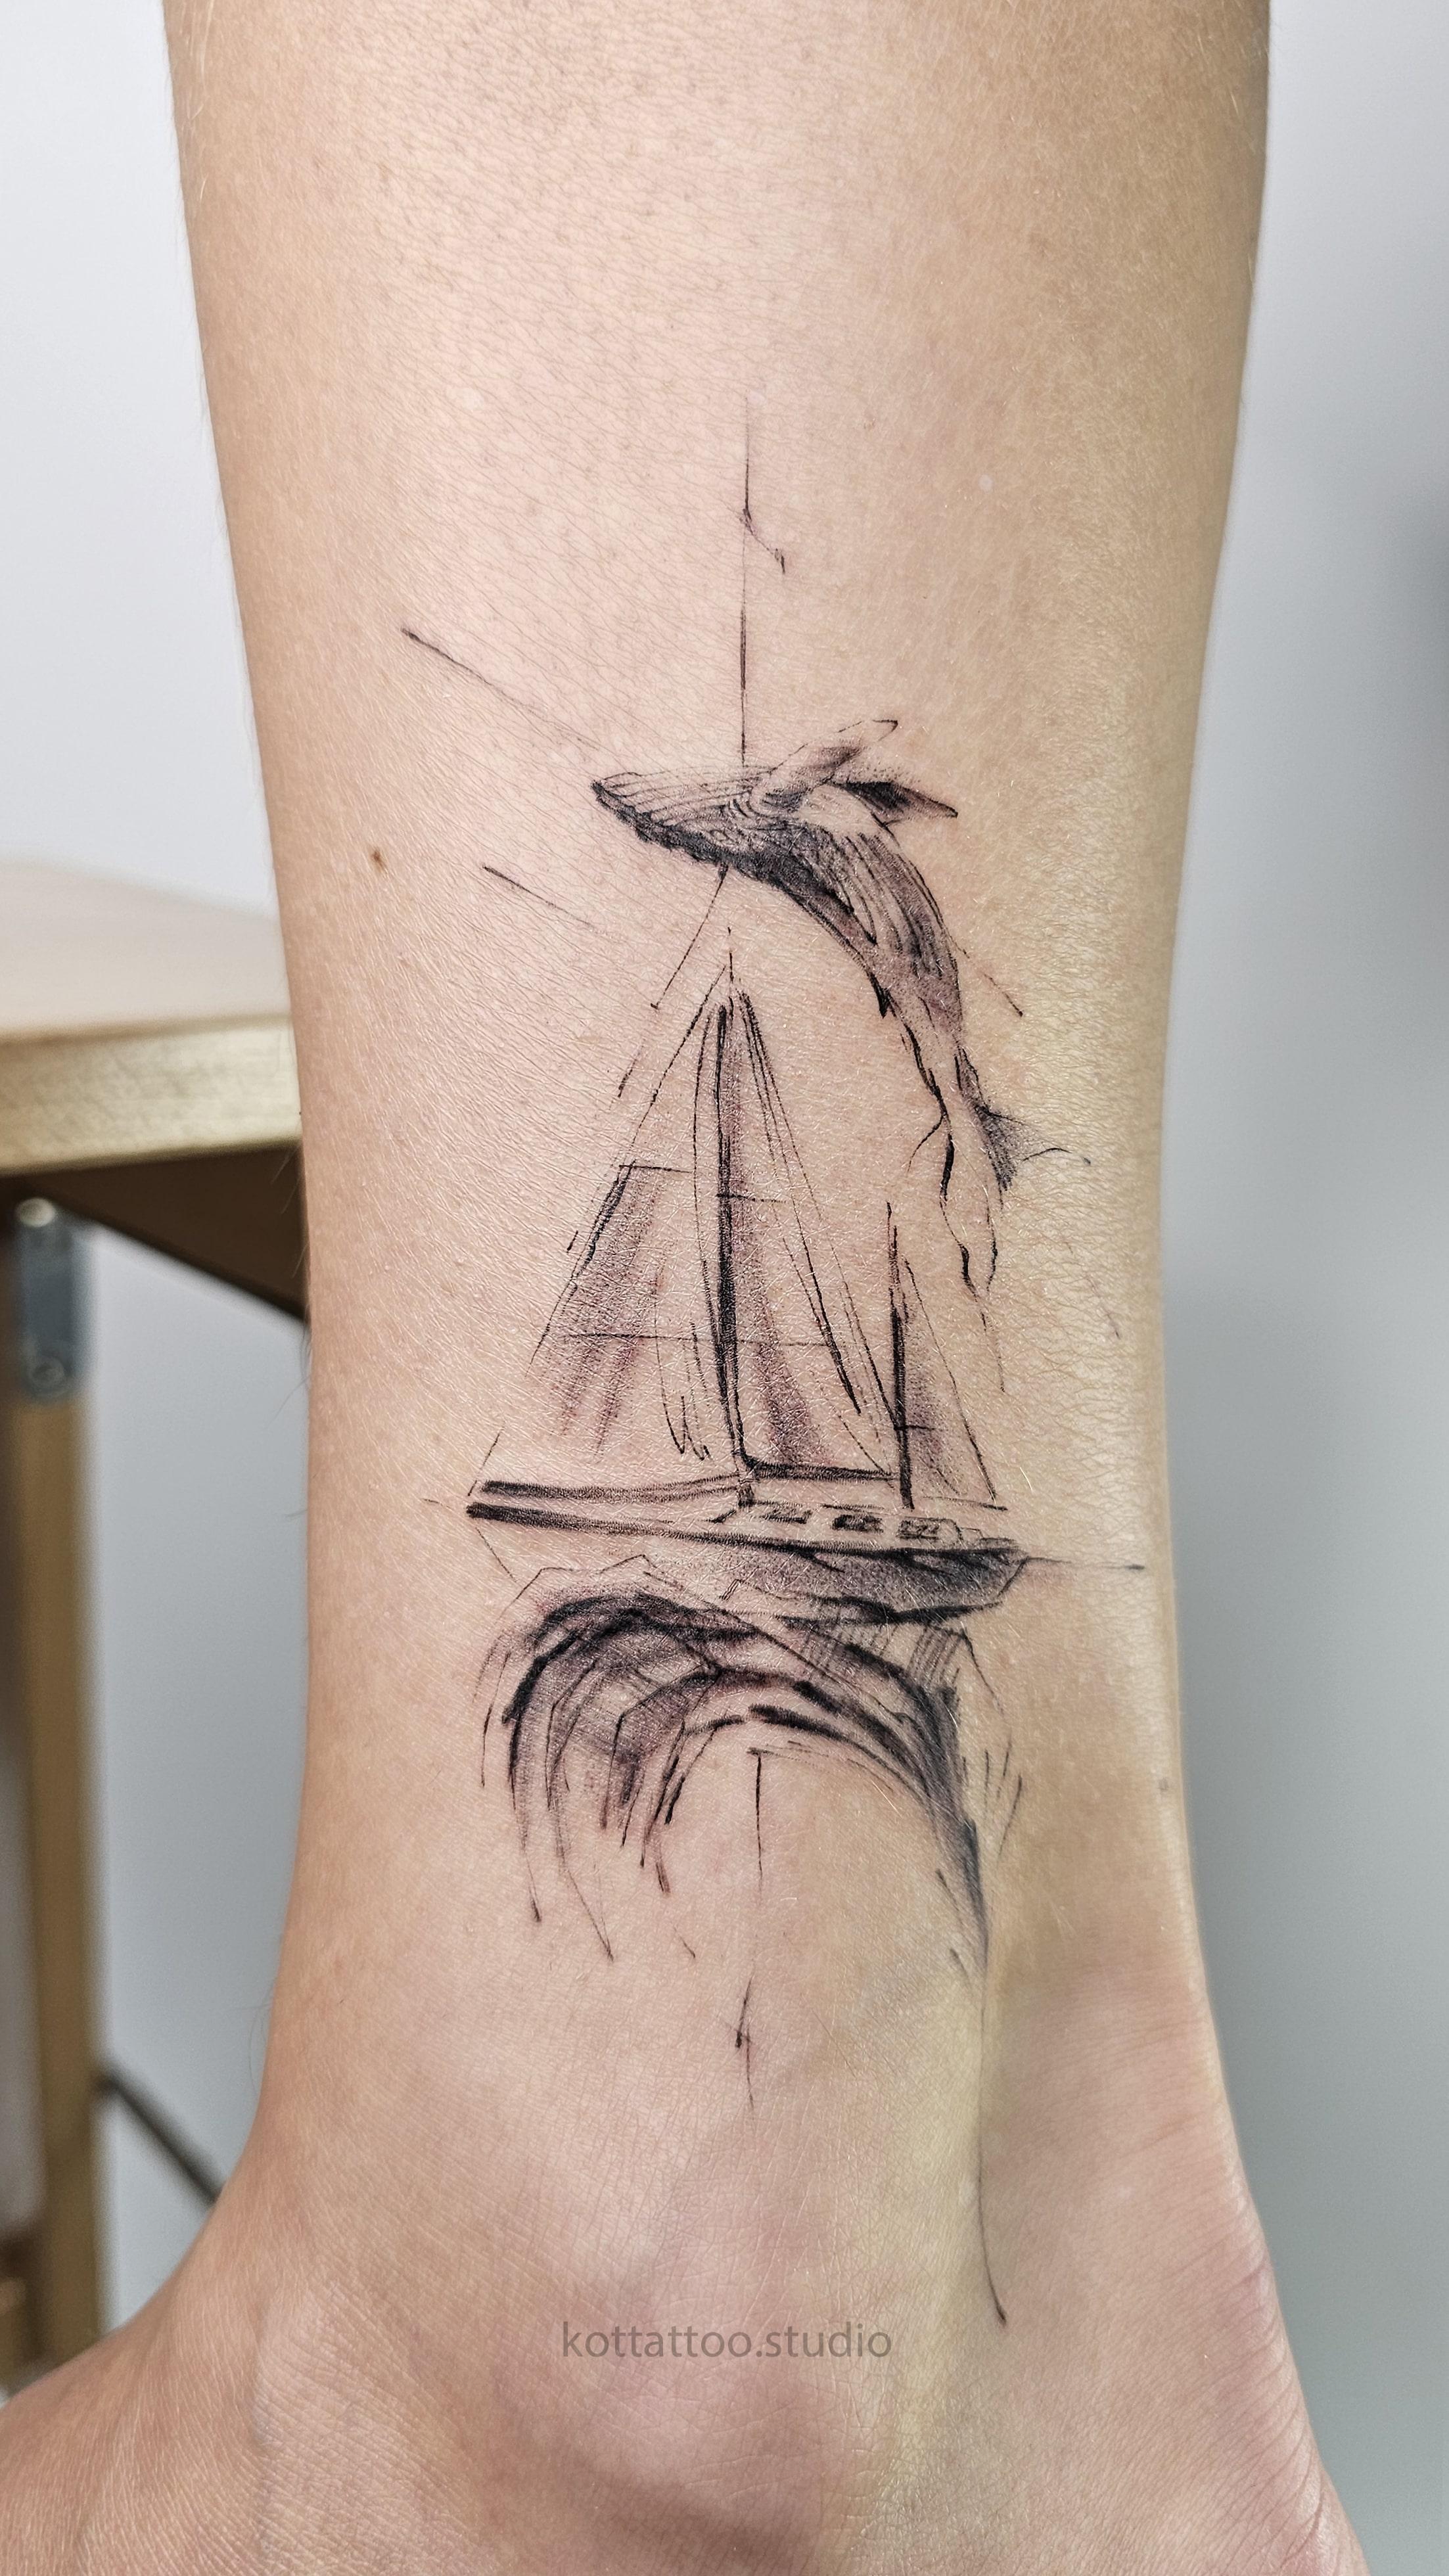 Тату кит, волны, корабль - мастер Женя, портфолио КOT Tattoo Studio